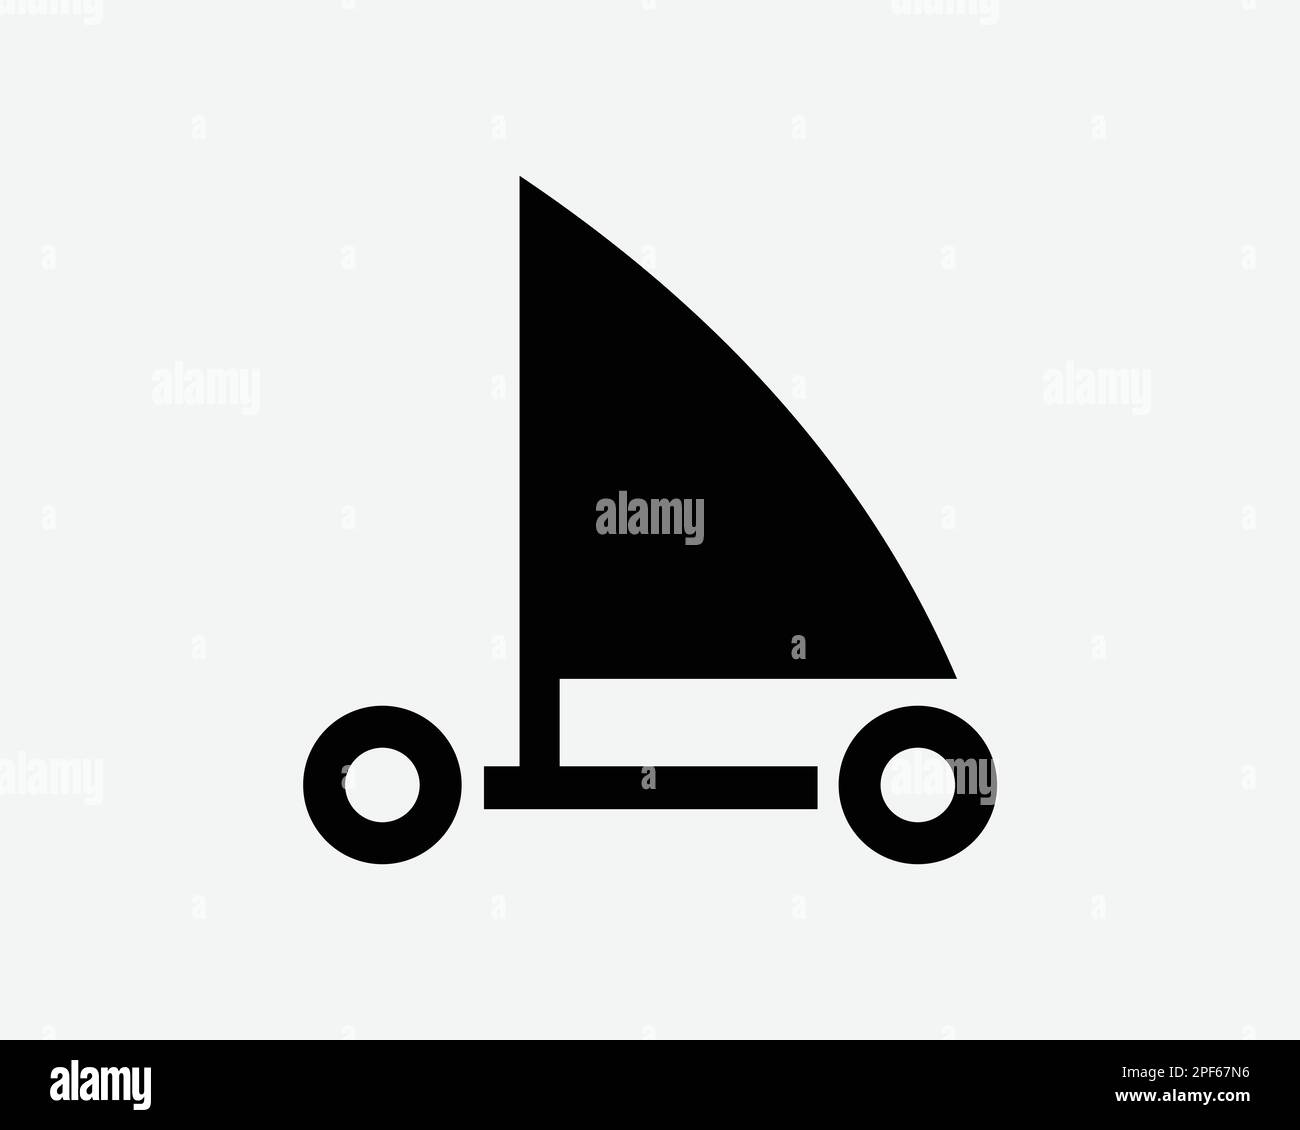 Symbol Für Das Segeln Segelboot Sandyachting Dirtbootfahren Wind Powered Vector Schwarzweiß Silhouettensymbol Schild Grafik Clipart Illustration Piktogramm Stock Vektor